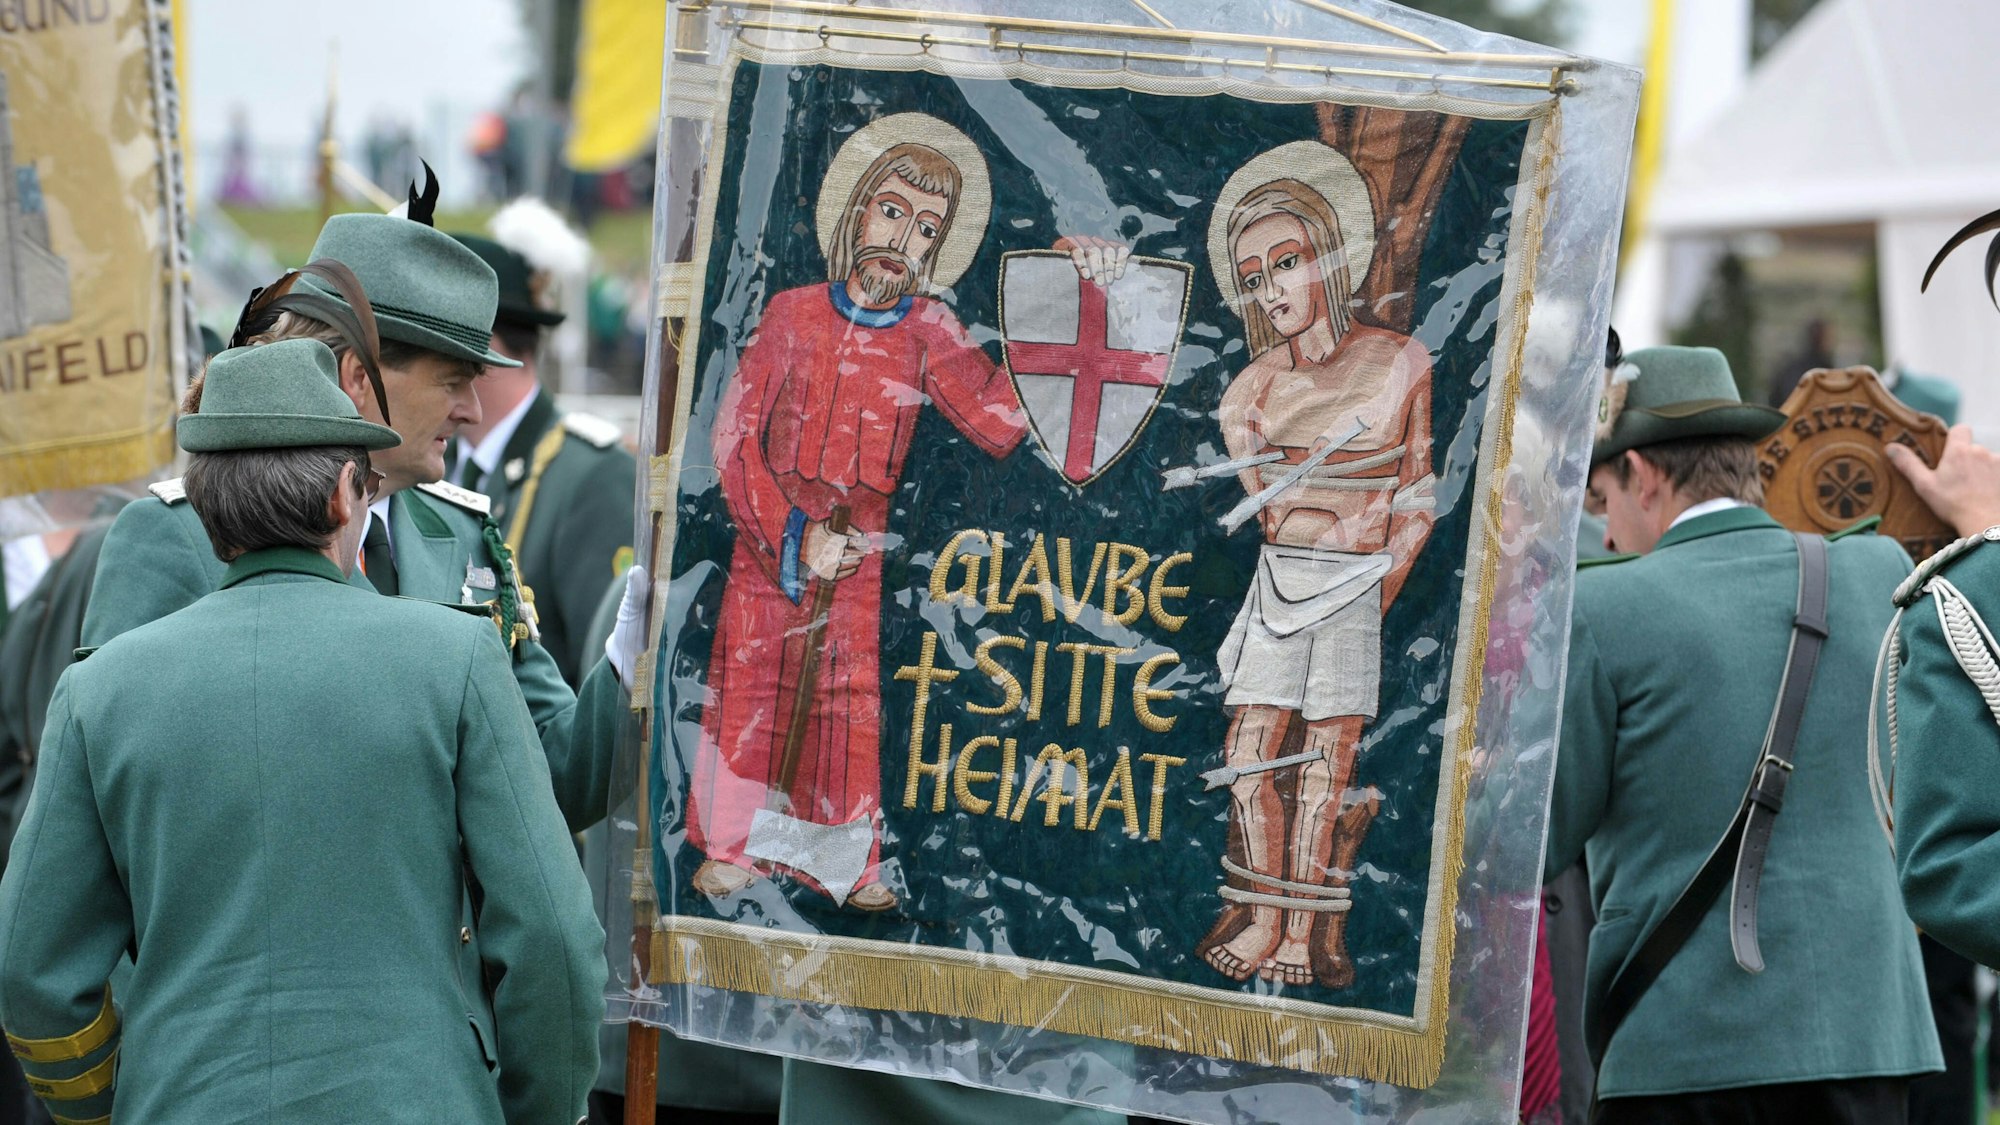 Katholisch und werteorientiert: Die Historischen Deutschen Schützenbruderschaften, hier Teilnehmer eines Festumzuges in Vechta, haben sich per Unvereinbarkeitsbeschluss von der AfD abgegrenzt.